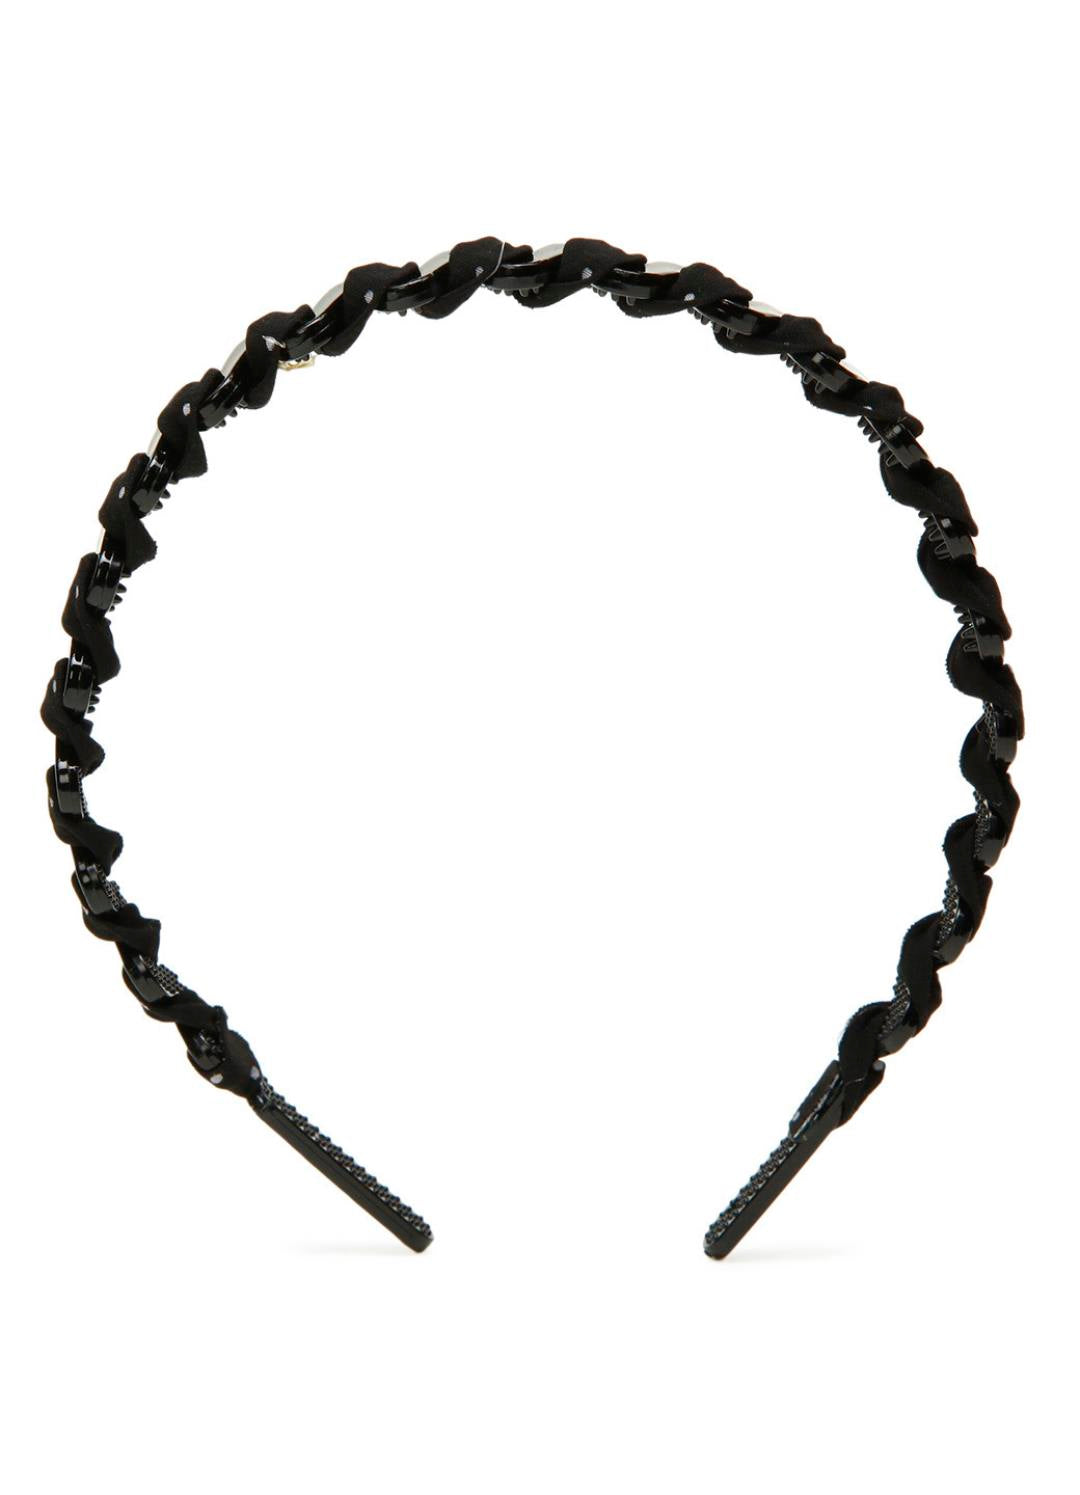 Stol'n Black Small Dot Ribbon spiral on Plastic hairband for Girls